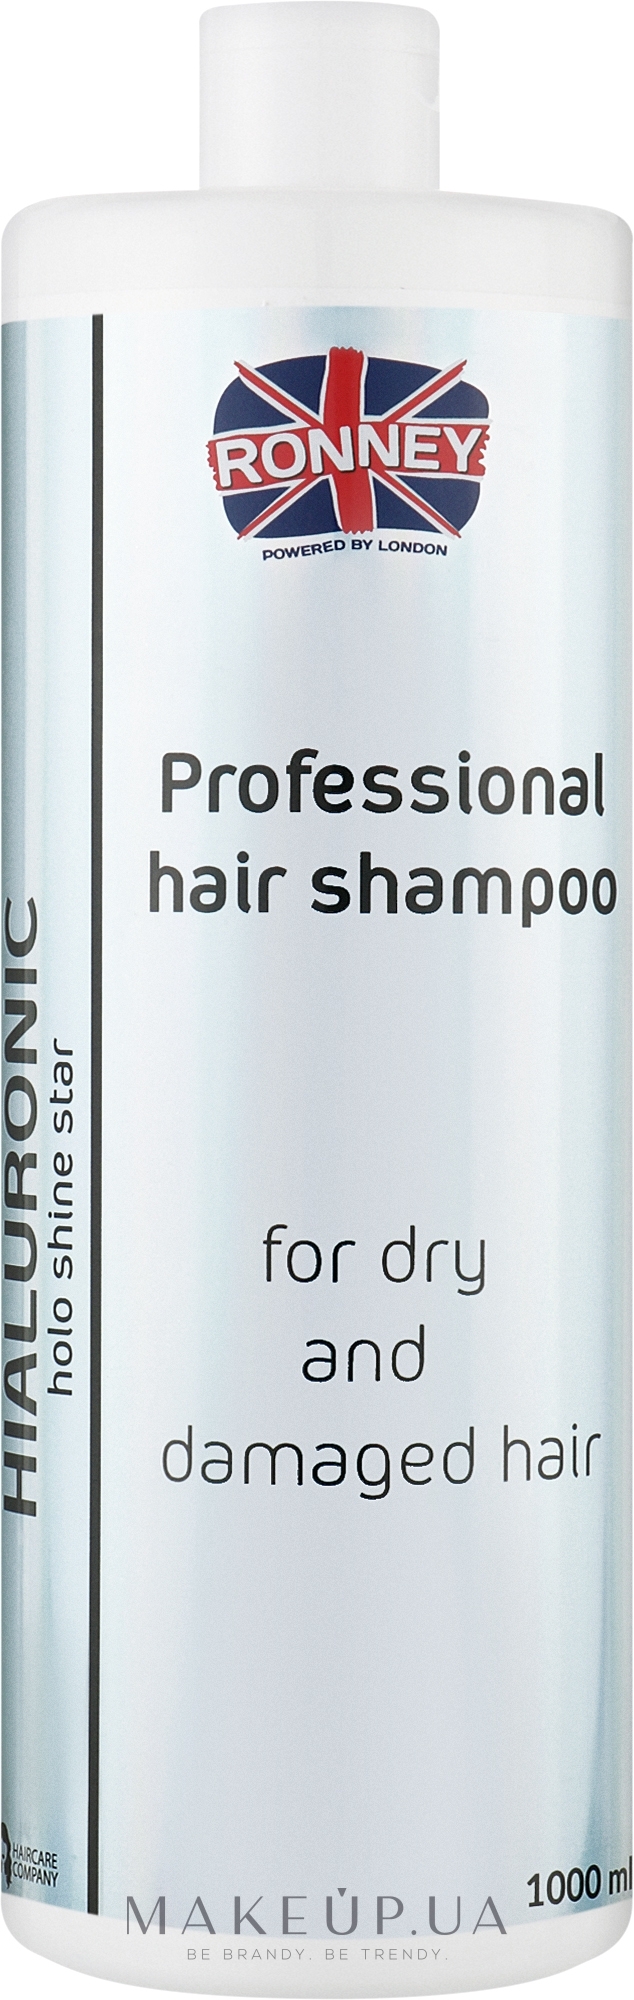 Зволожувальний шампунь з гіалуроновою кислотою для сухого та пошкодженого волосся - Ronney Professional Holo Shine Star Hialuronic Shampoo — фото 1000ml